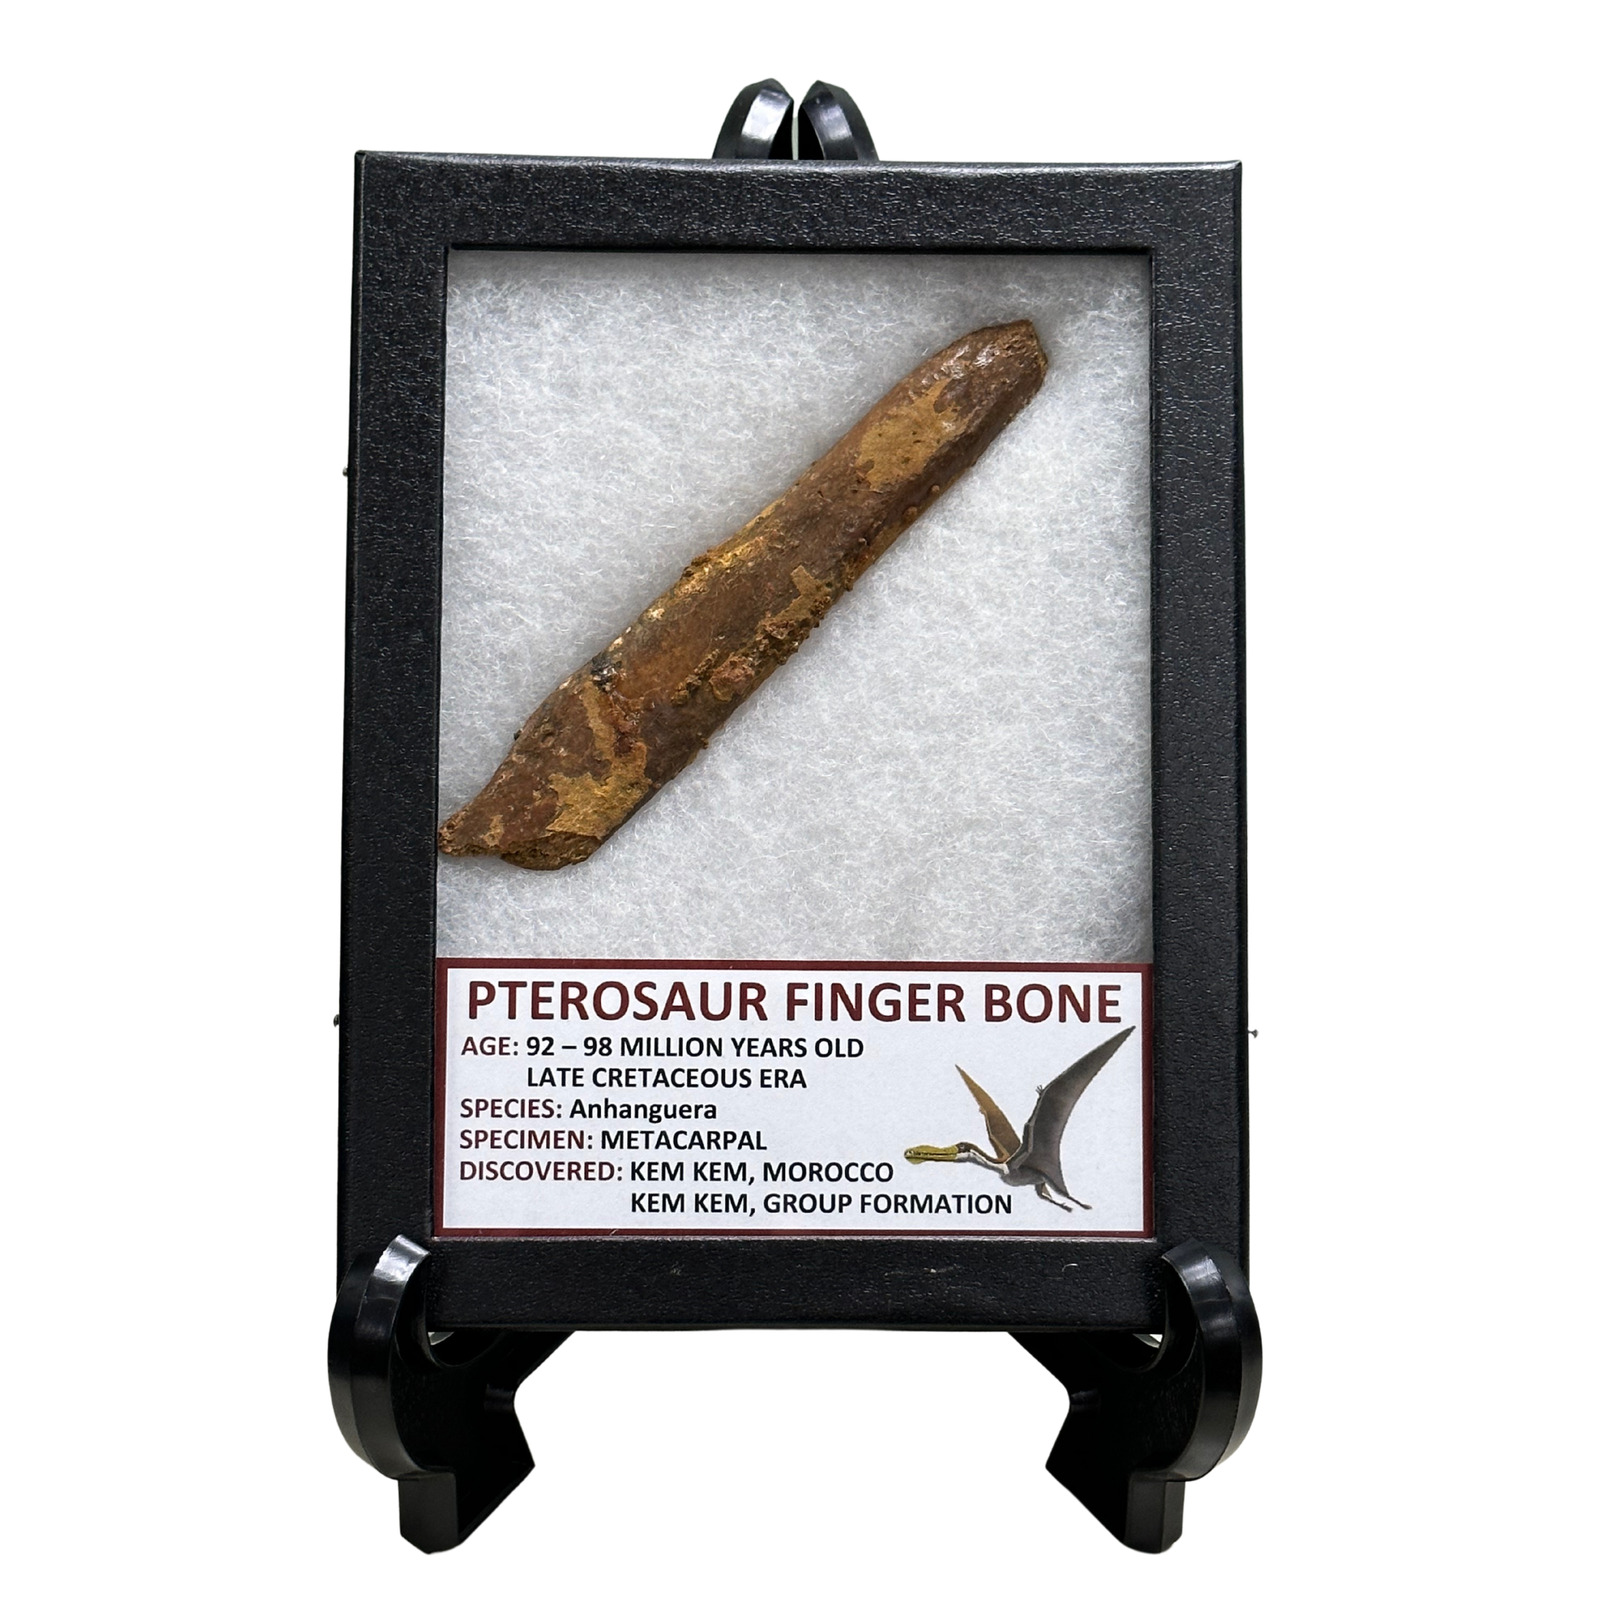 Pterosaur Finger Bone